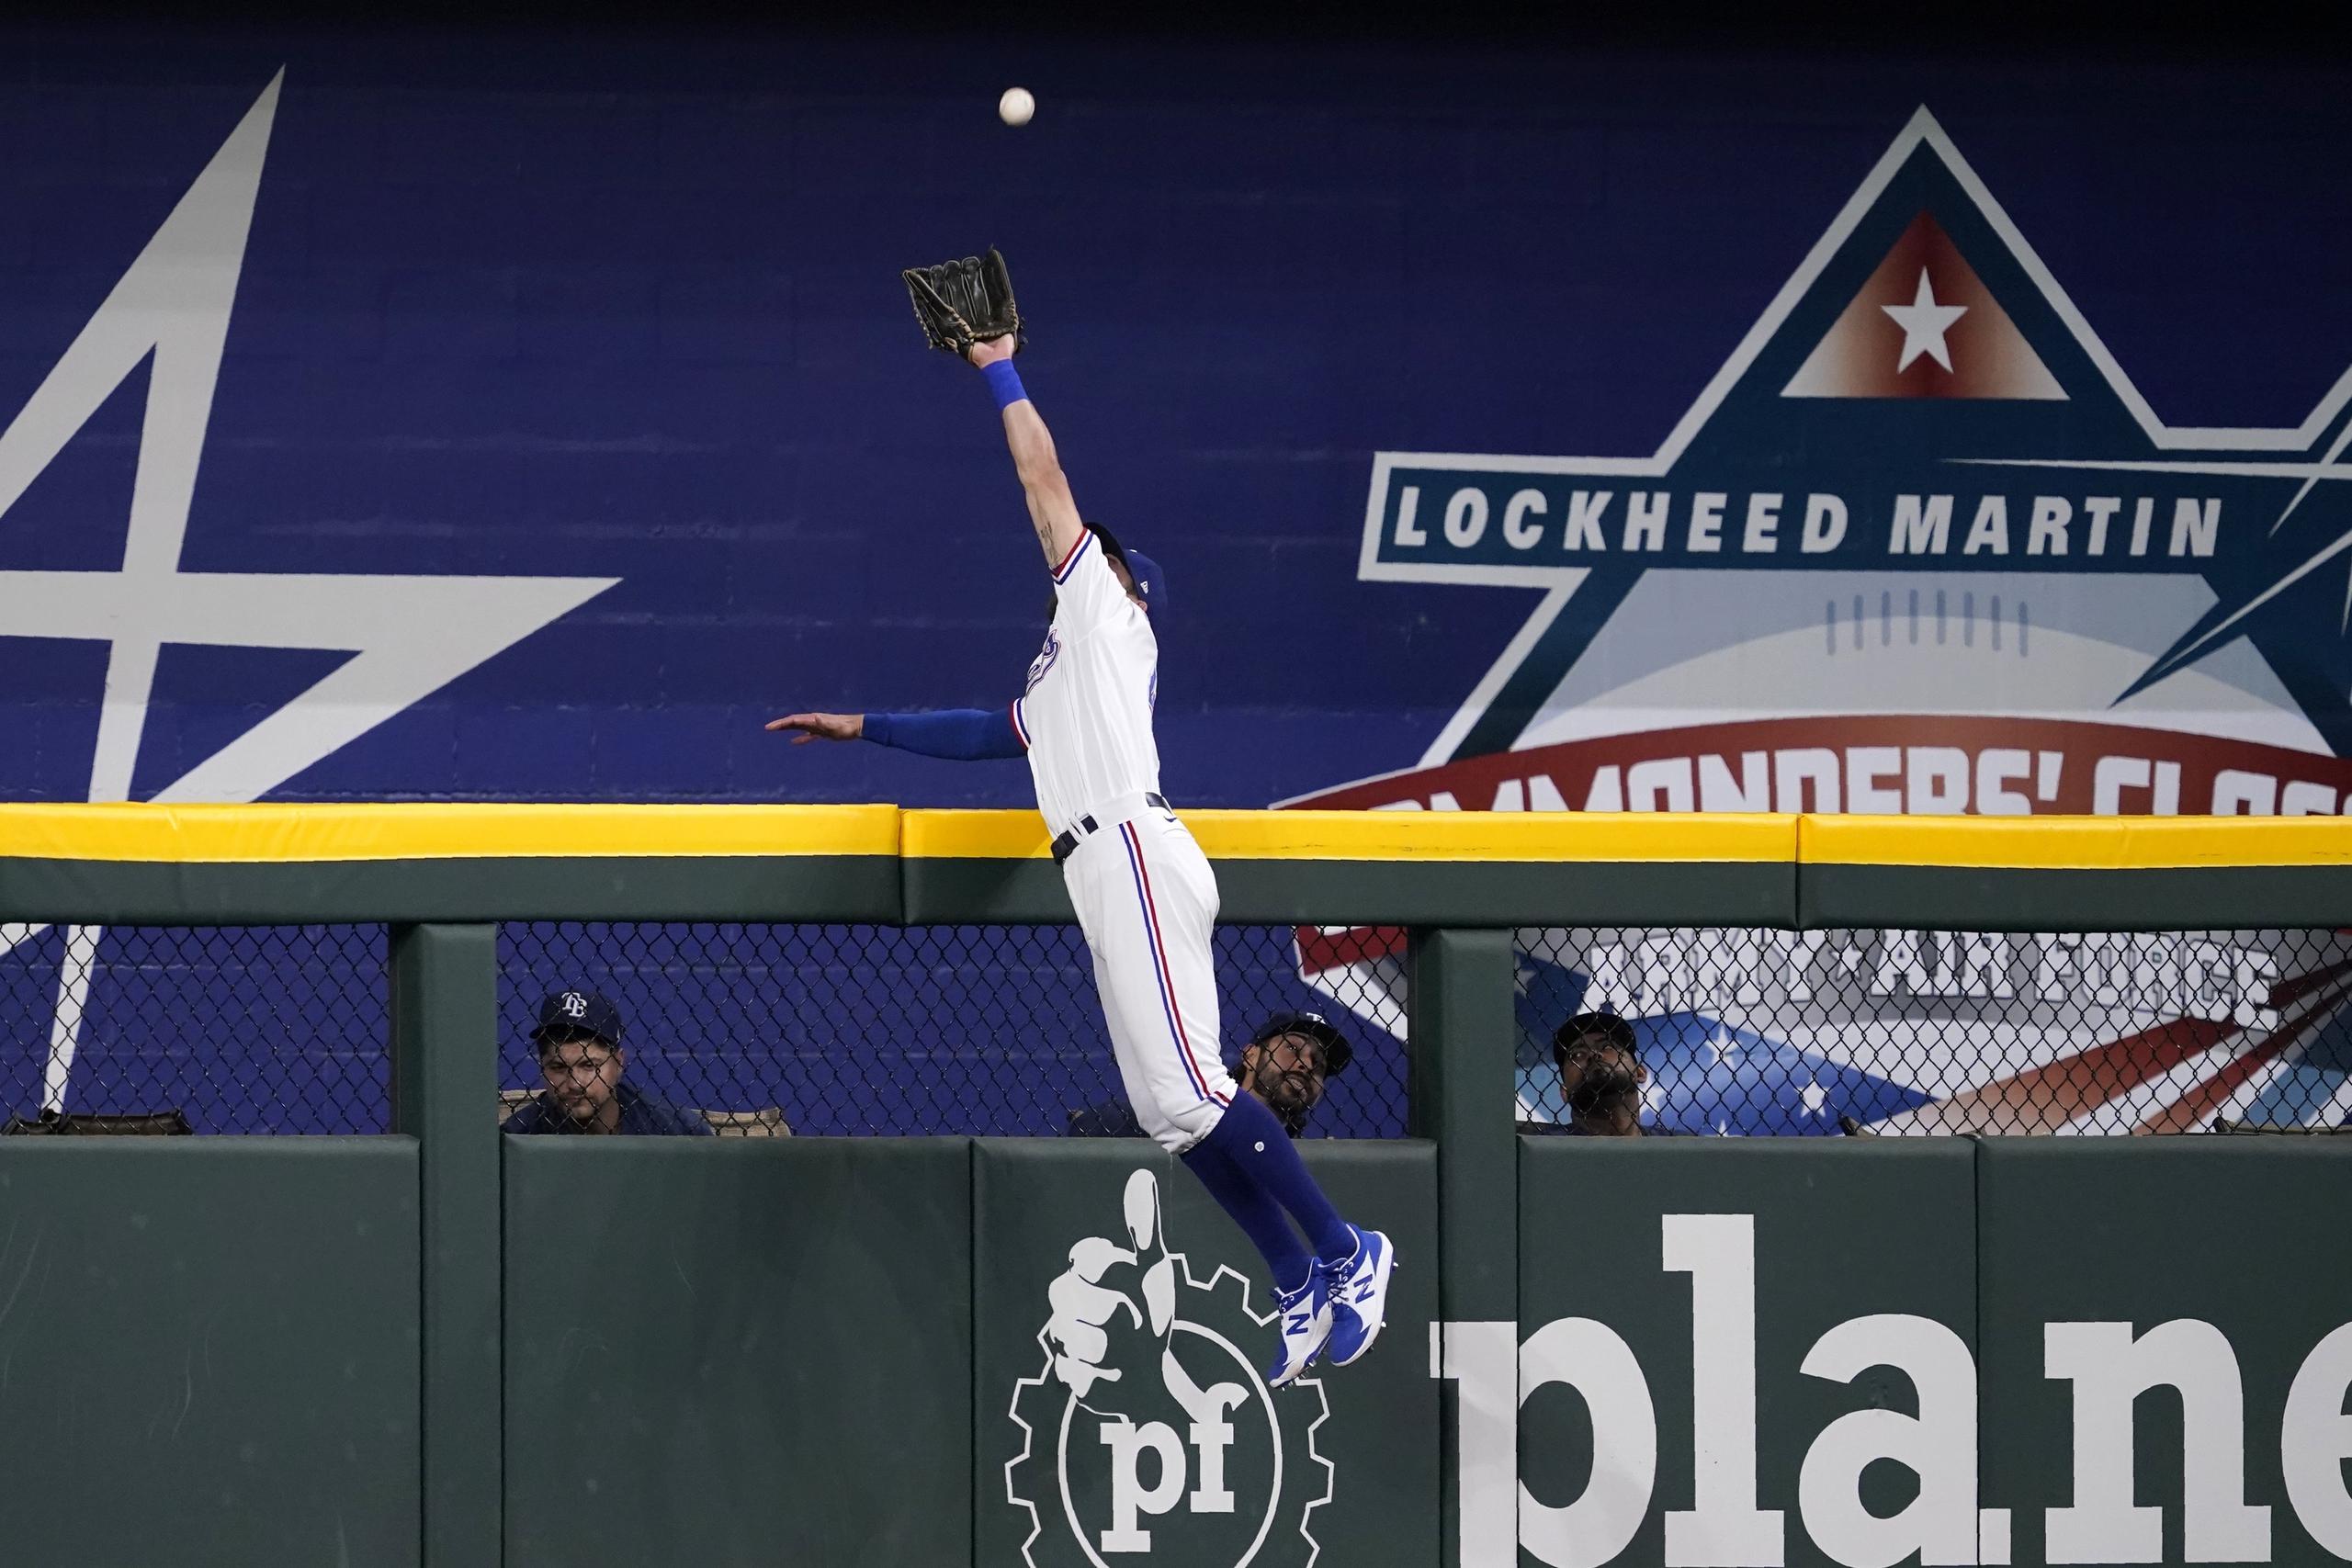 El jardinero central de los Rangers de Texas, Eli White, salta sobre el muro para atrapar un batazo de Ji-Man Choi, de los Rays de Tampa Bay, en el primer inning del juego de la MLB que enfrentó a ambos equipos el 30 de mayo de 2022, en Arlington, Texas.